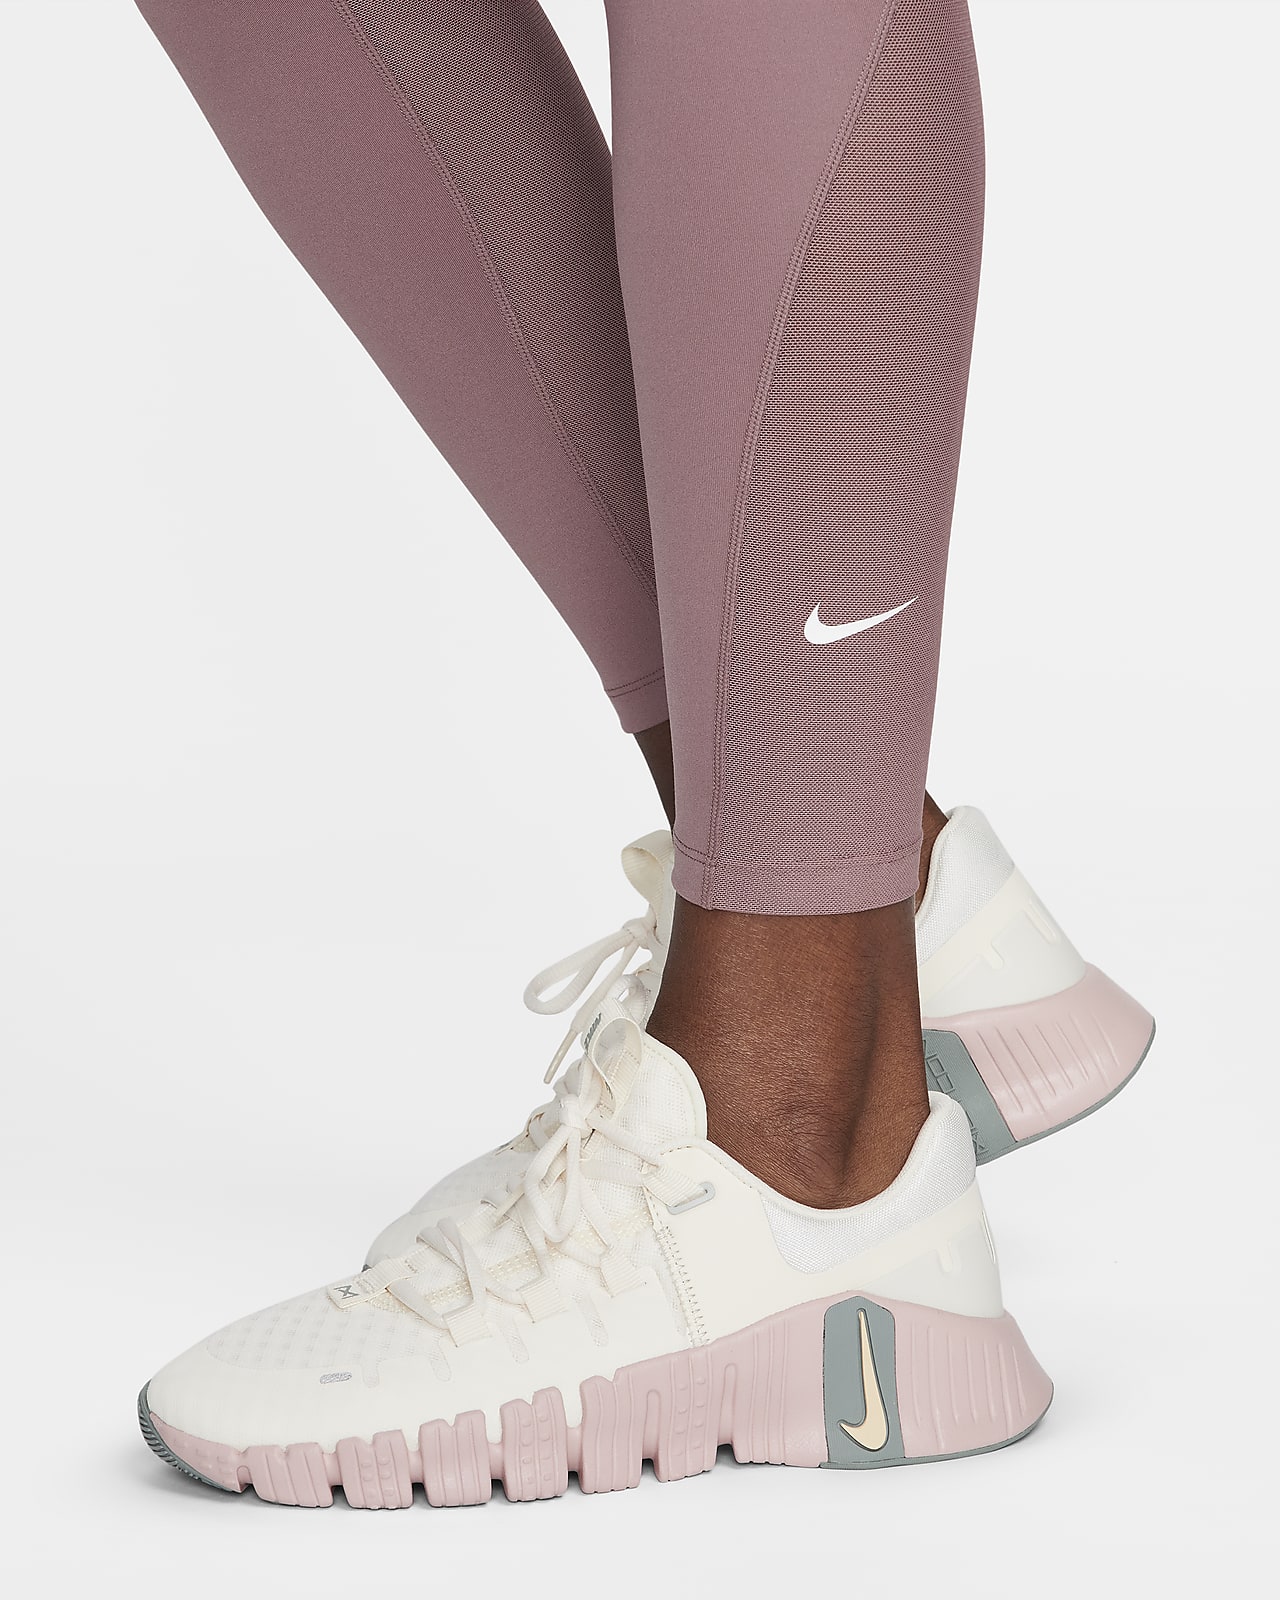 Women's 7/8 mid-rise leggings Nike One